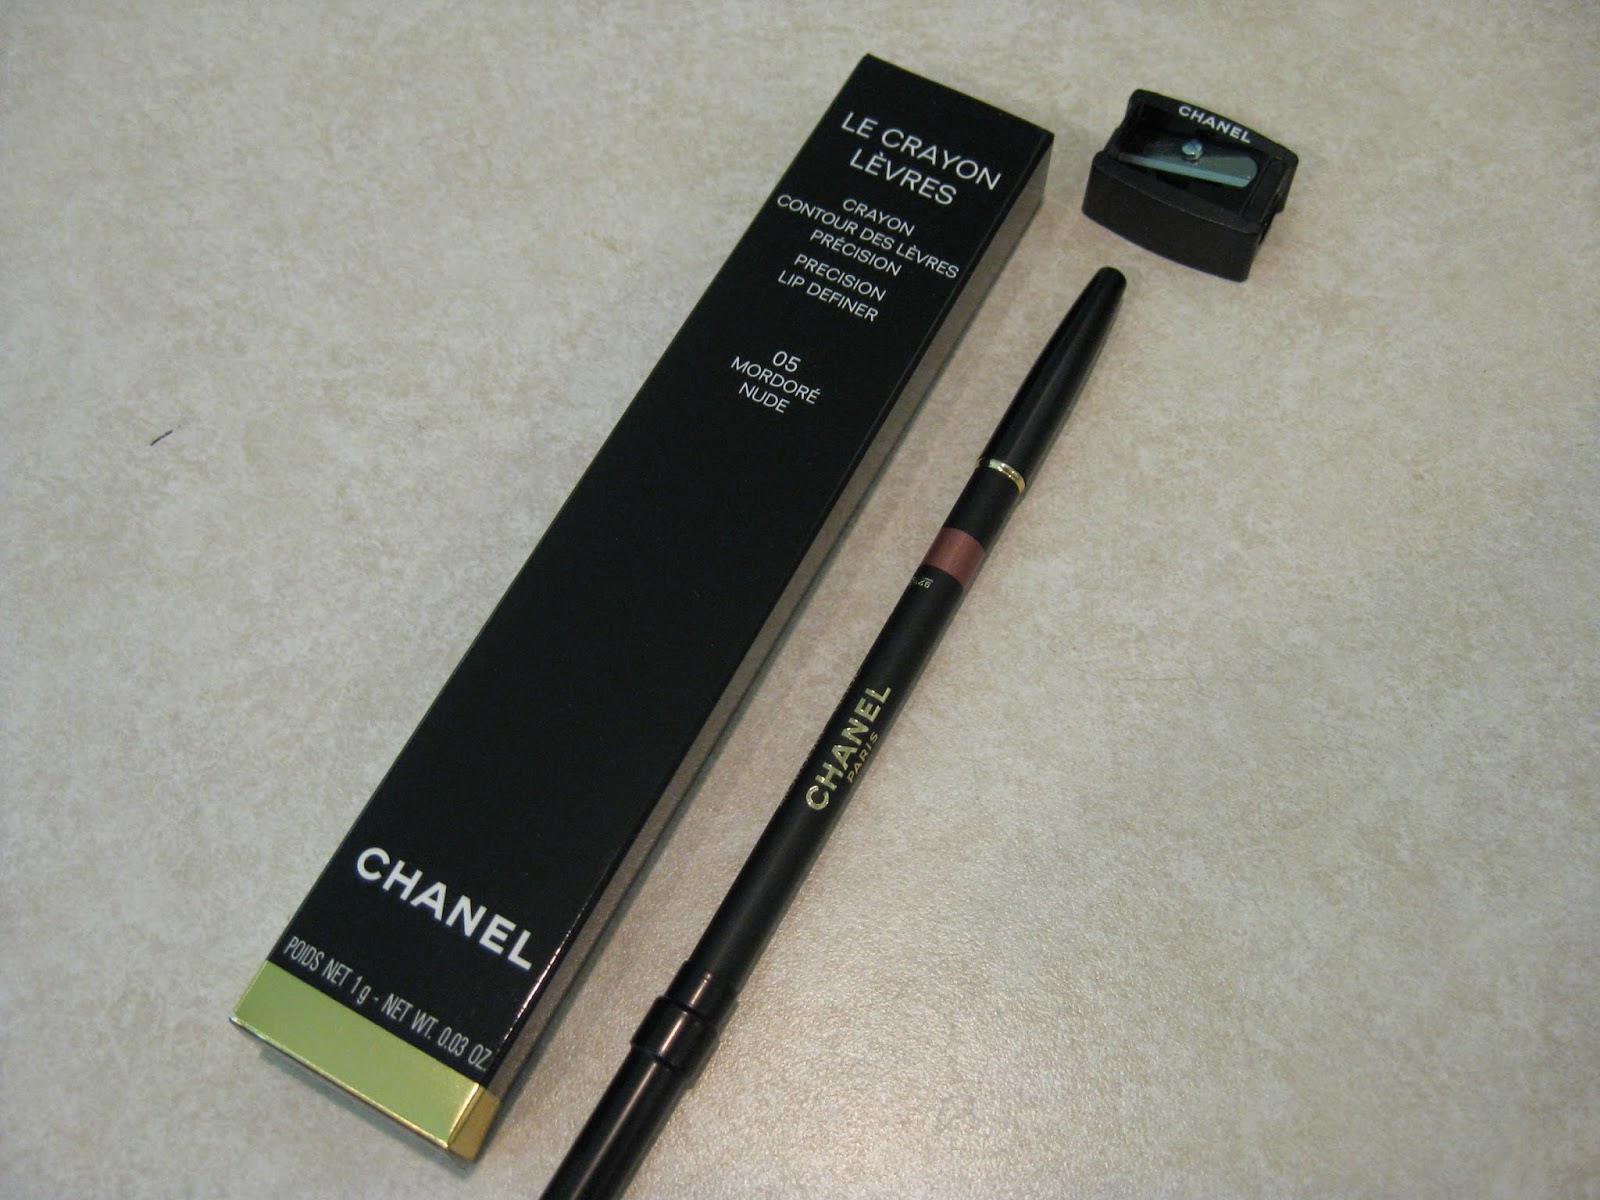 Lip Pencils - Makeup